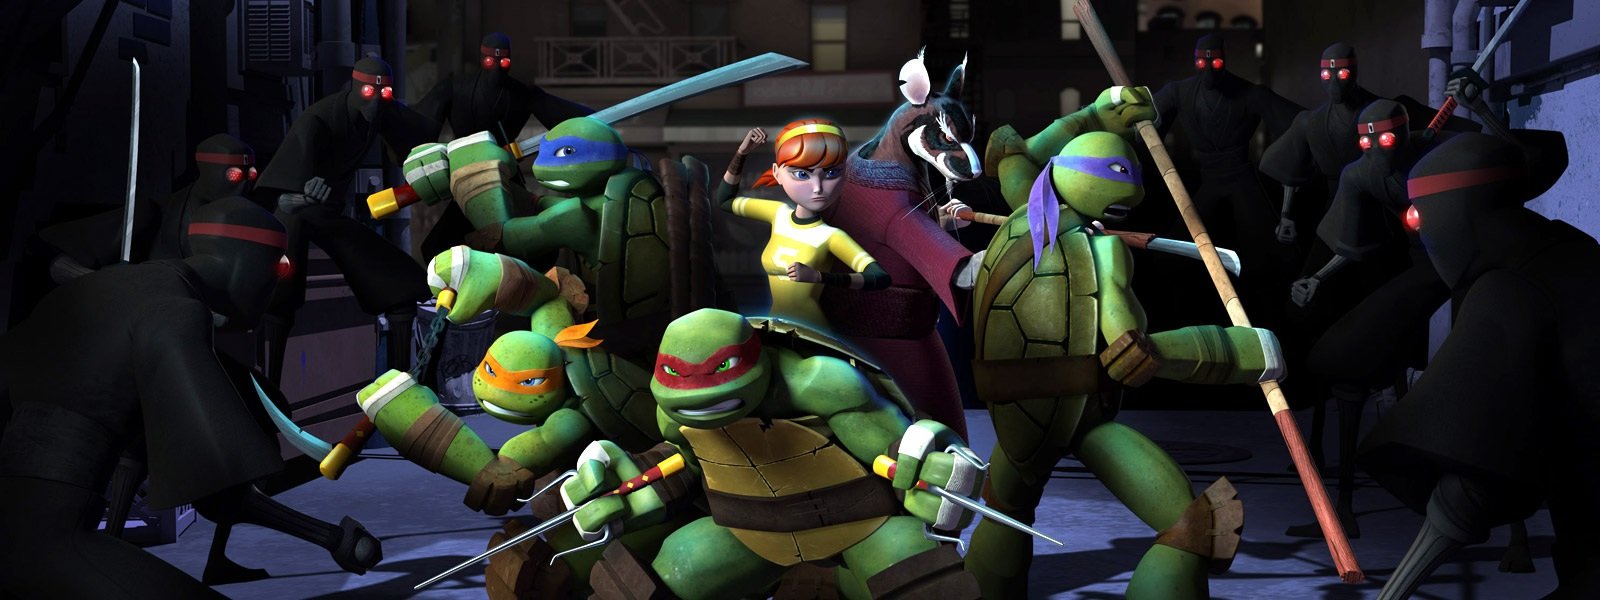 Nick Teenage Mutant Ninja Turtles